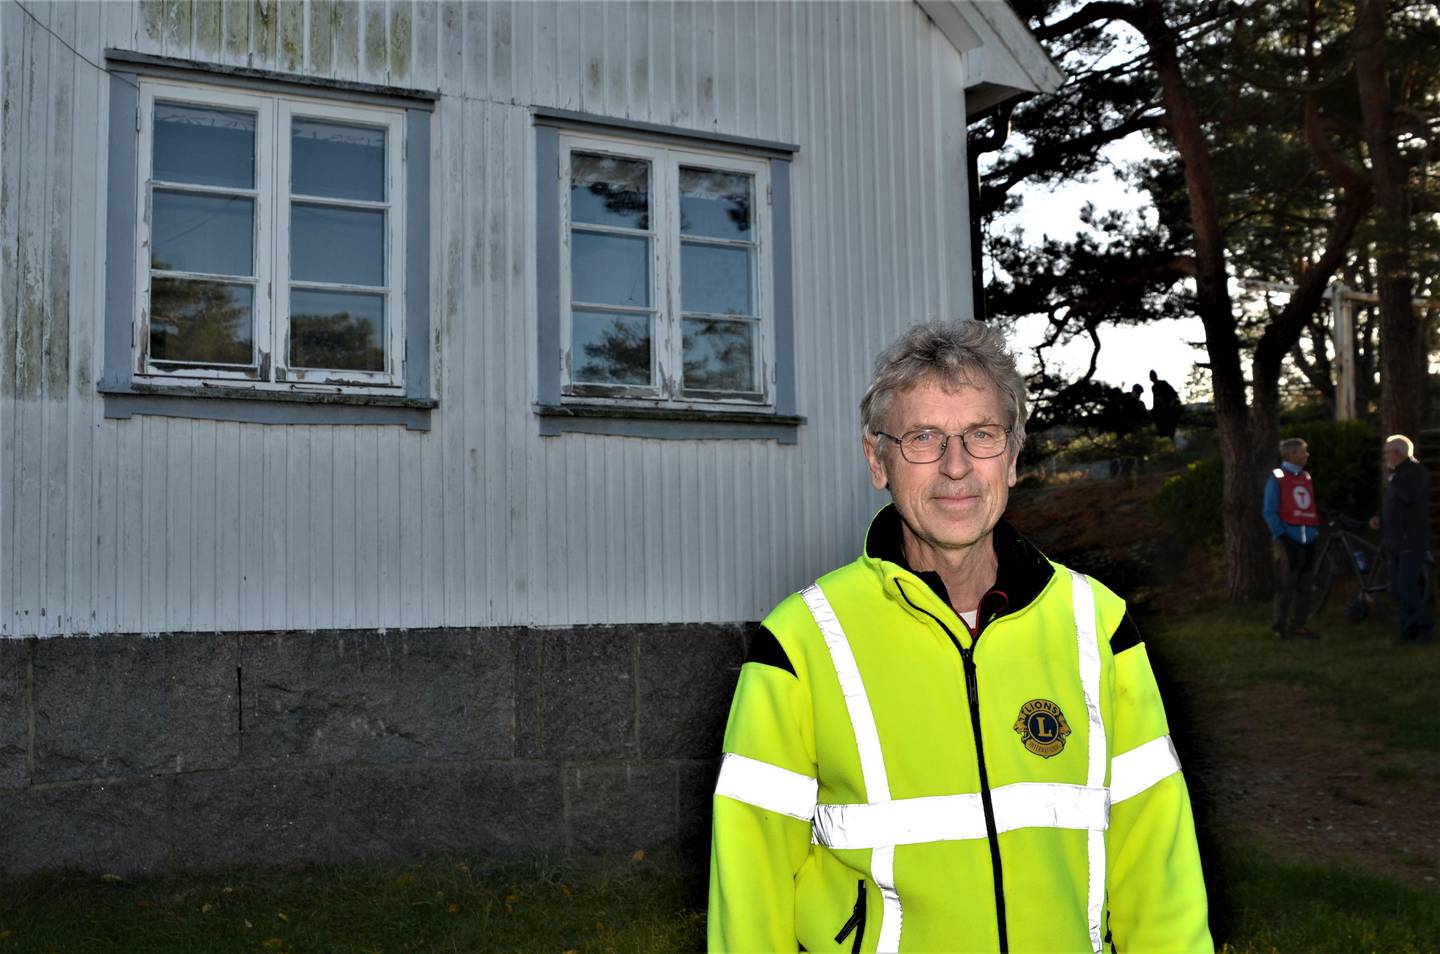 – Pynten kan bli et fint prosjekt for oss, mener president i Kråkerøy Lions, Tore Skaaden.